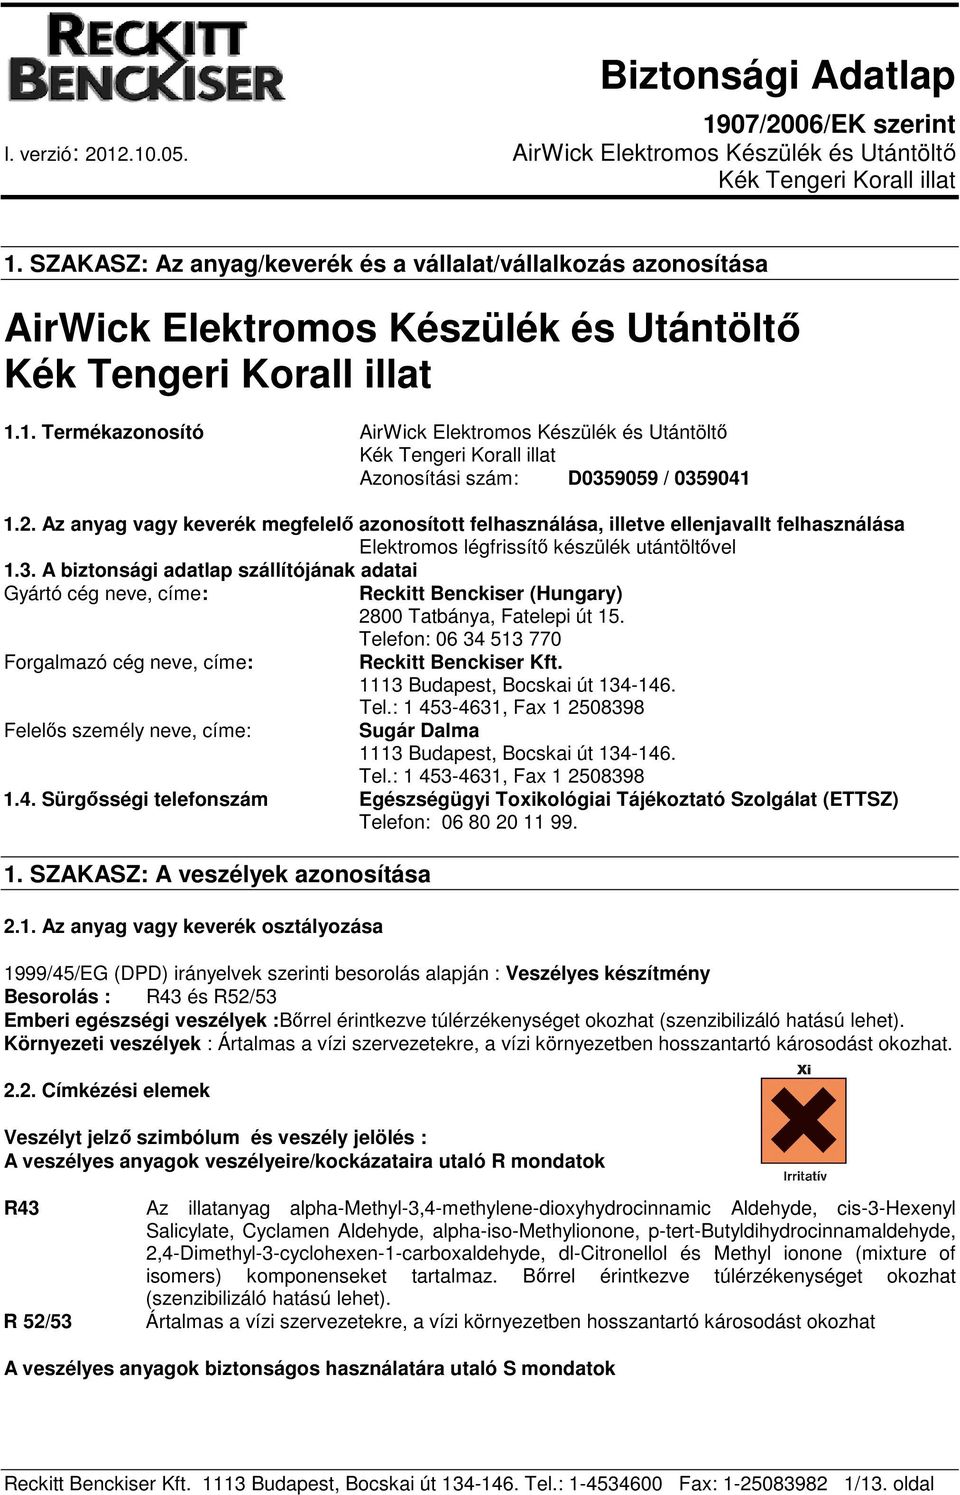 A biztonsági adatlap szállítójának adatai Gyártó cég neve, címe: Reckitt Benckiser (Hungary) 2800 Tatbánya, Fatelepi út 15. Telefon: 06 34 513 770 Forgalmazó cég neve, címe: Reckitt Benckiser Kft.